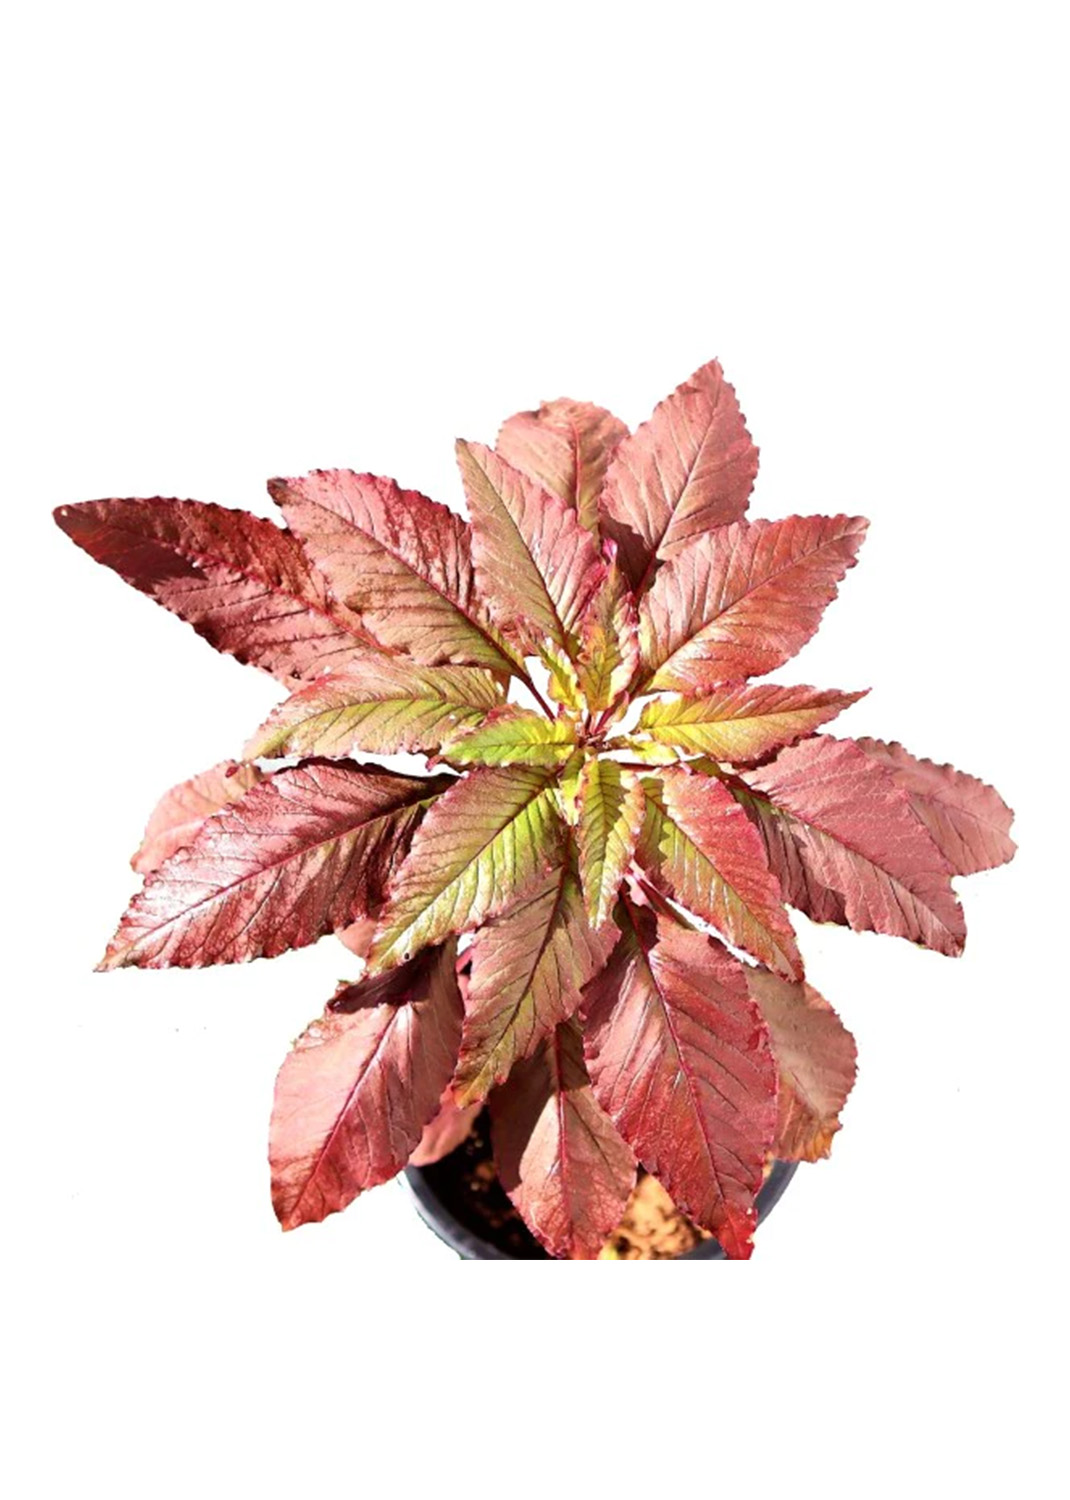 Red Amaranth, Amaranthus Cruentus